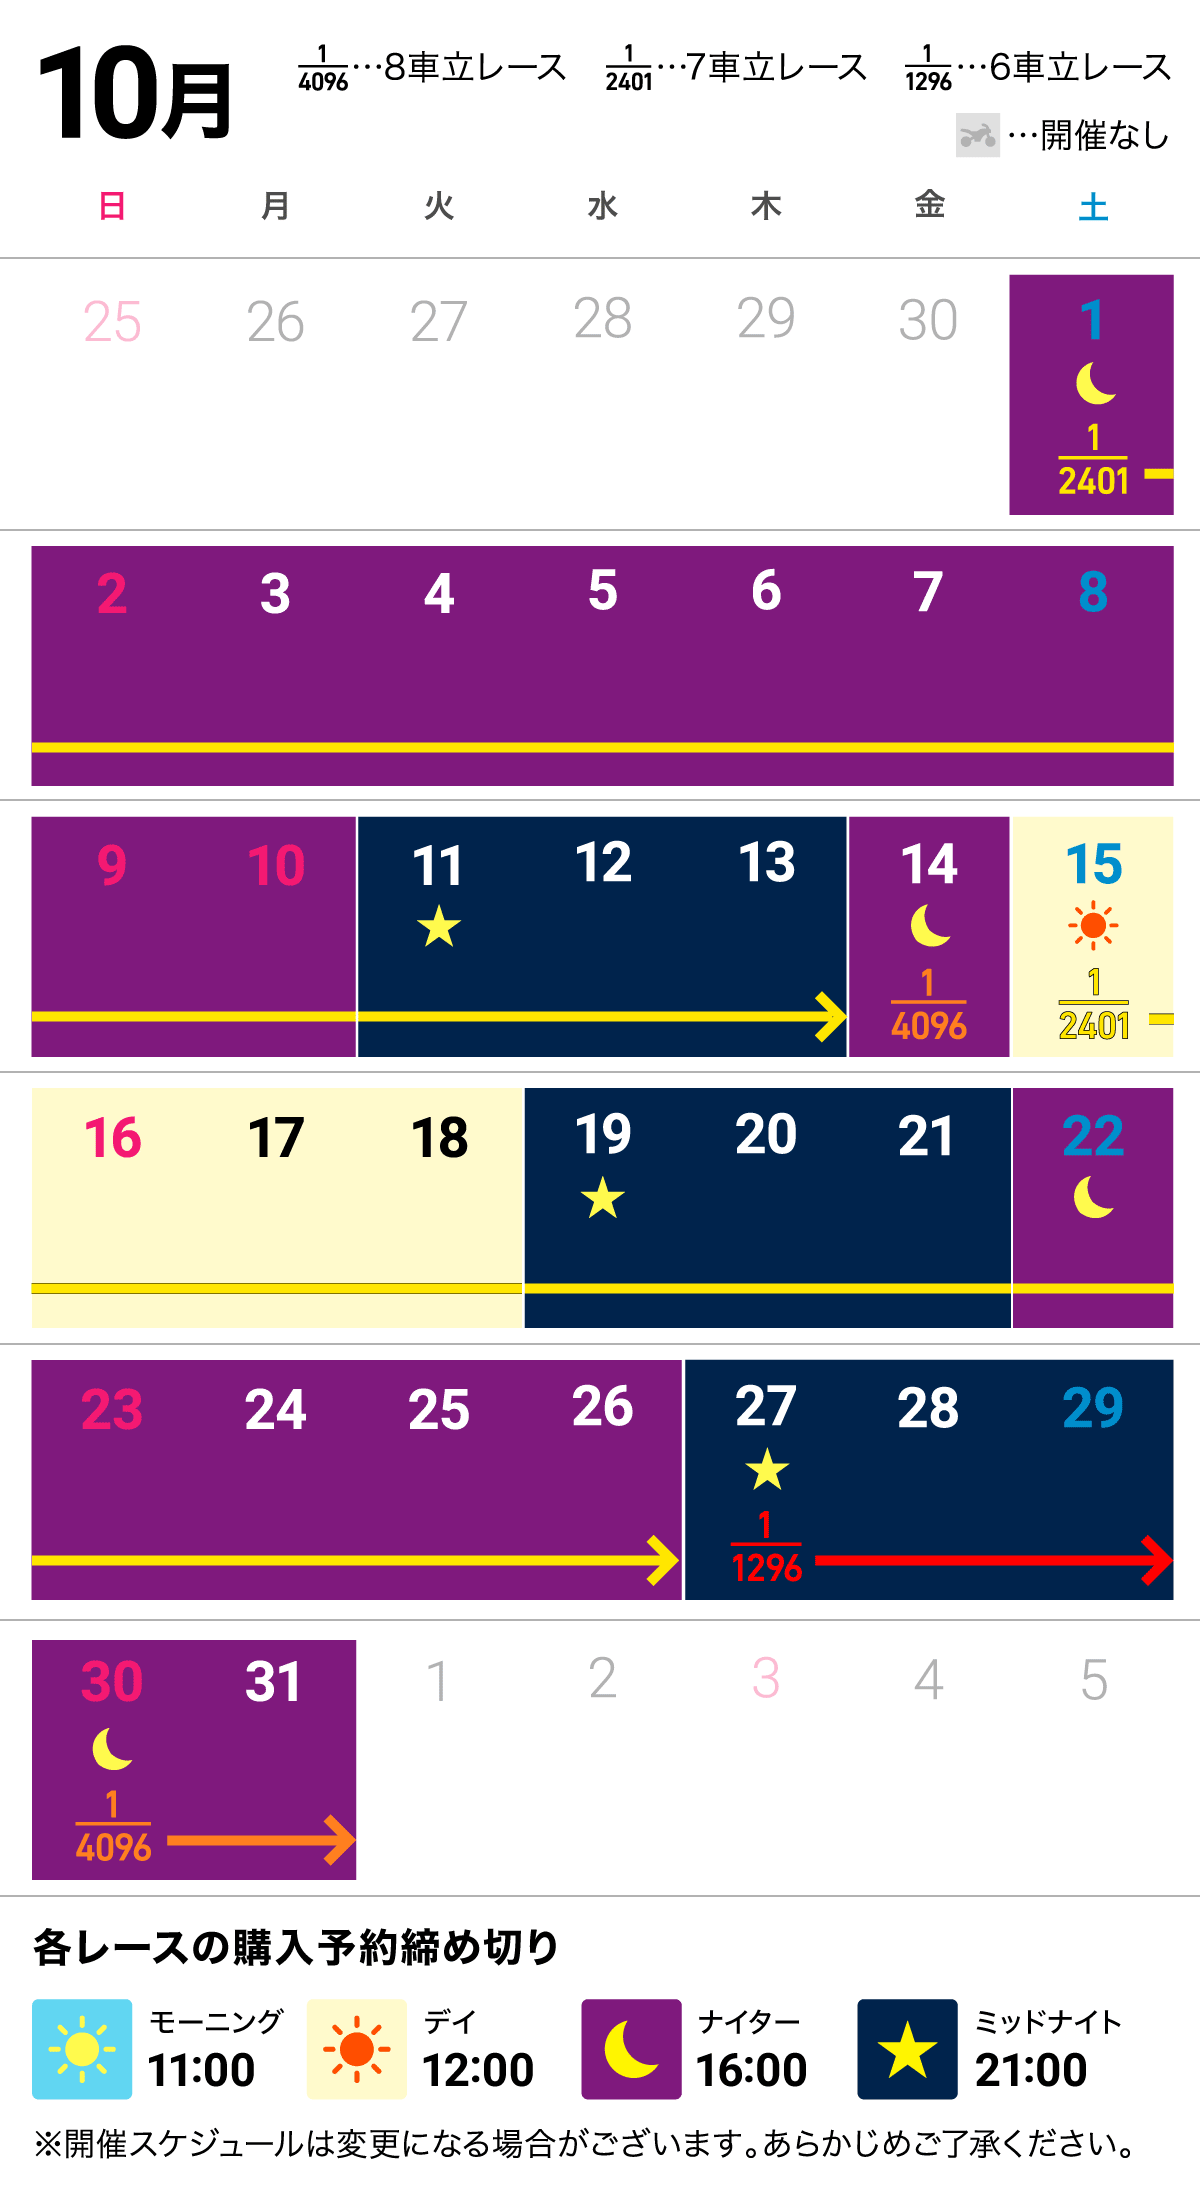 sch calendar oct